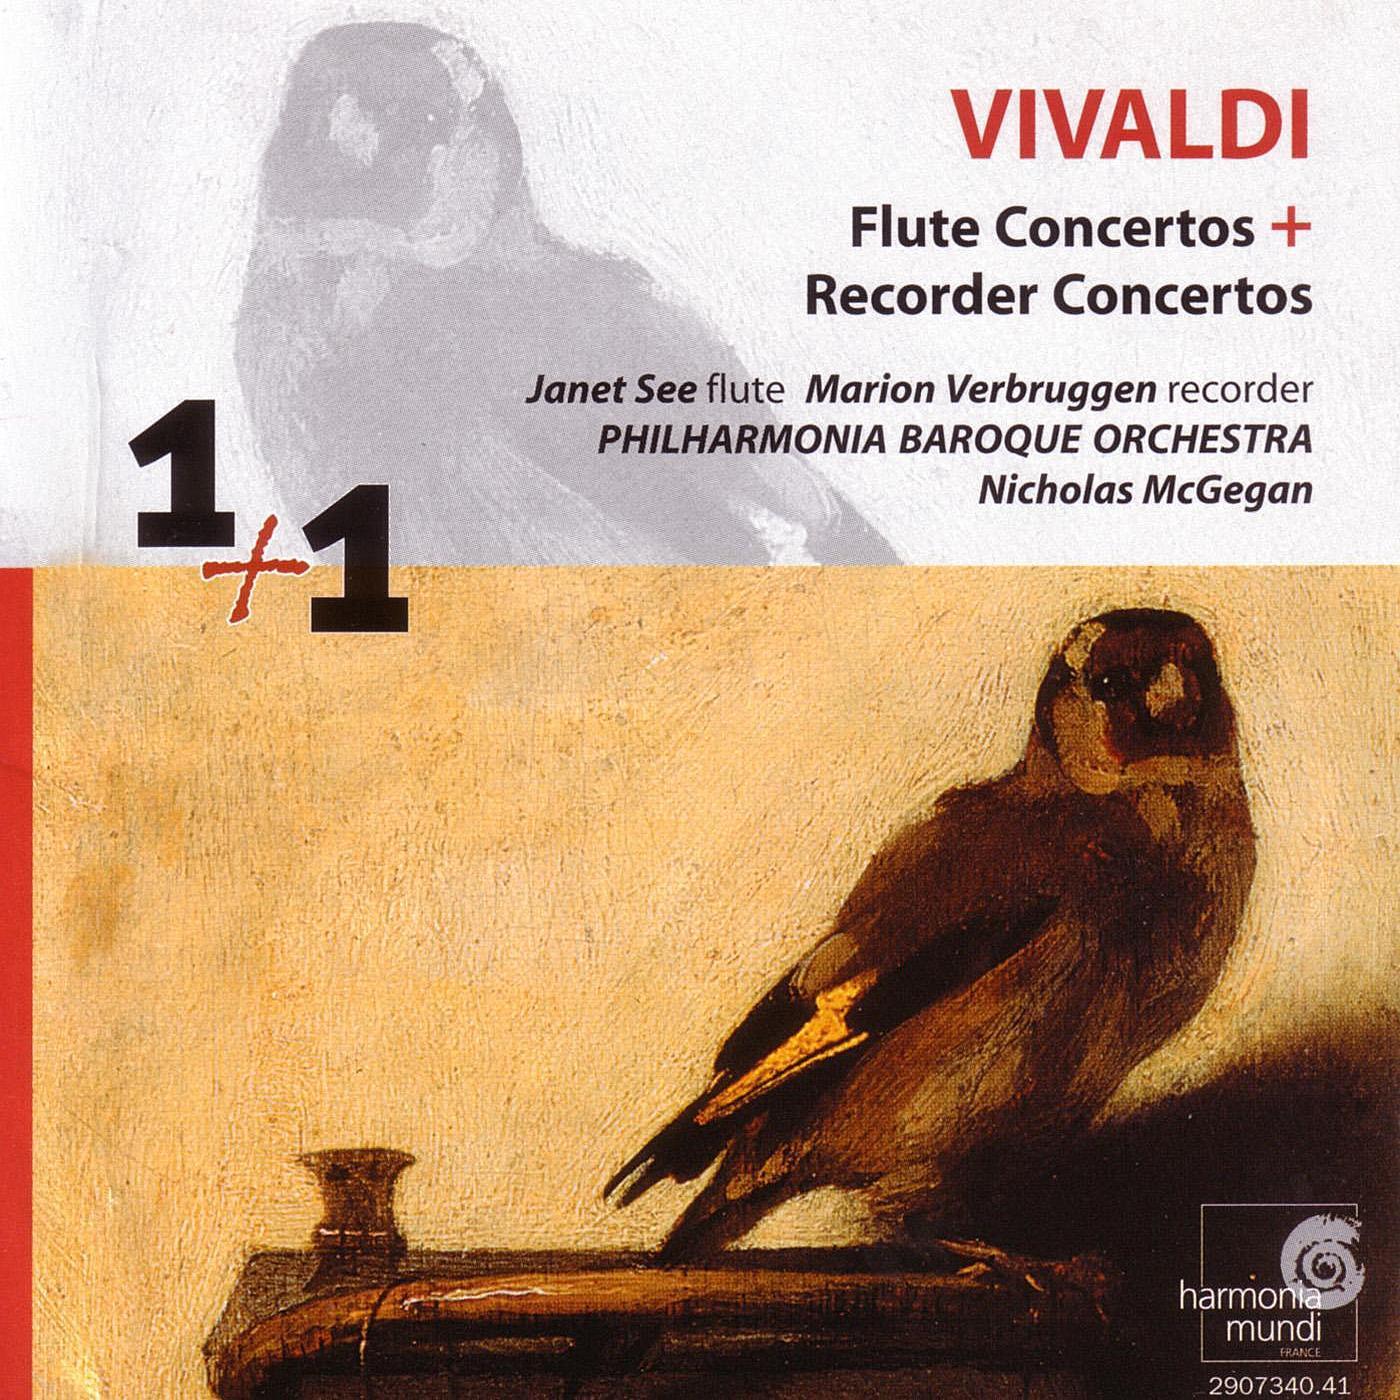 Recorder Concerto in C Major, RV 444: I. Allegro non molto